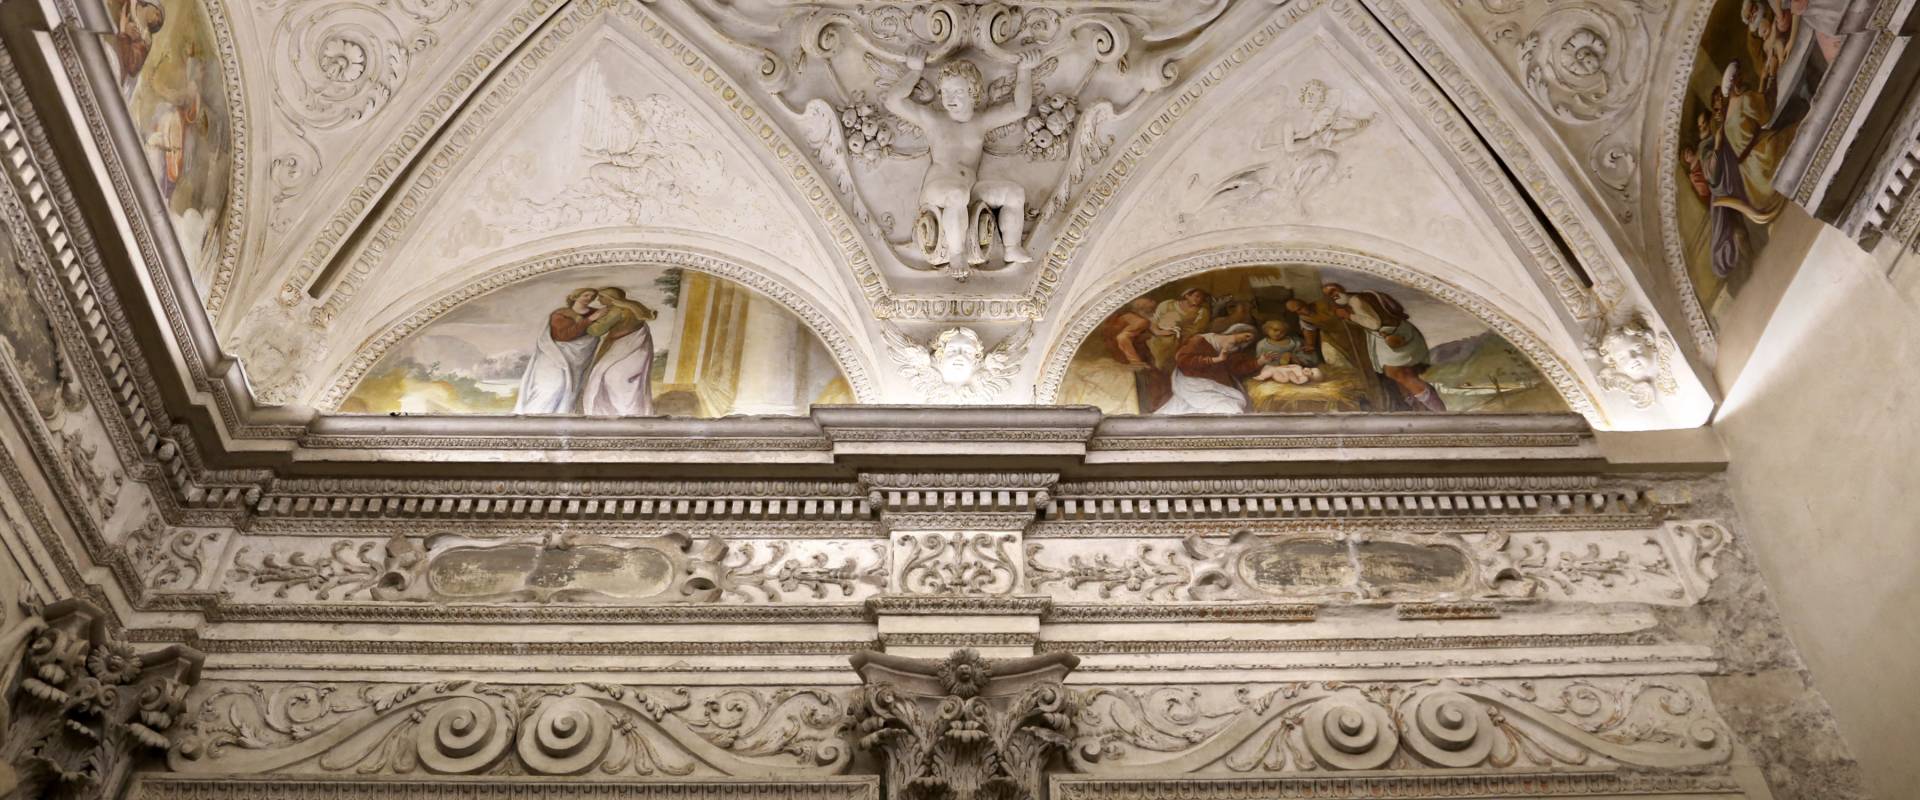 Gualtieri, palazzo bentivoglio, cappella, storie della vergine di scuola emiliana del 1605, 06 foto di Sailko